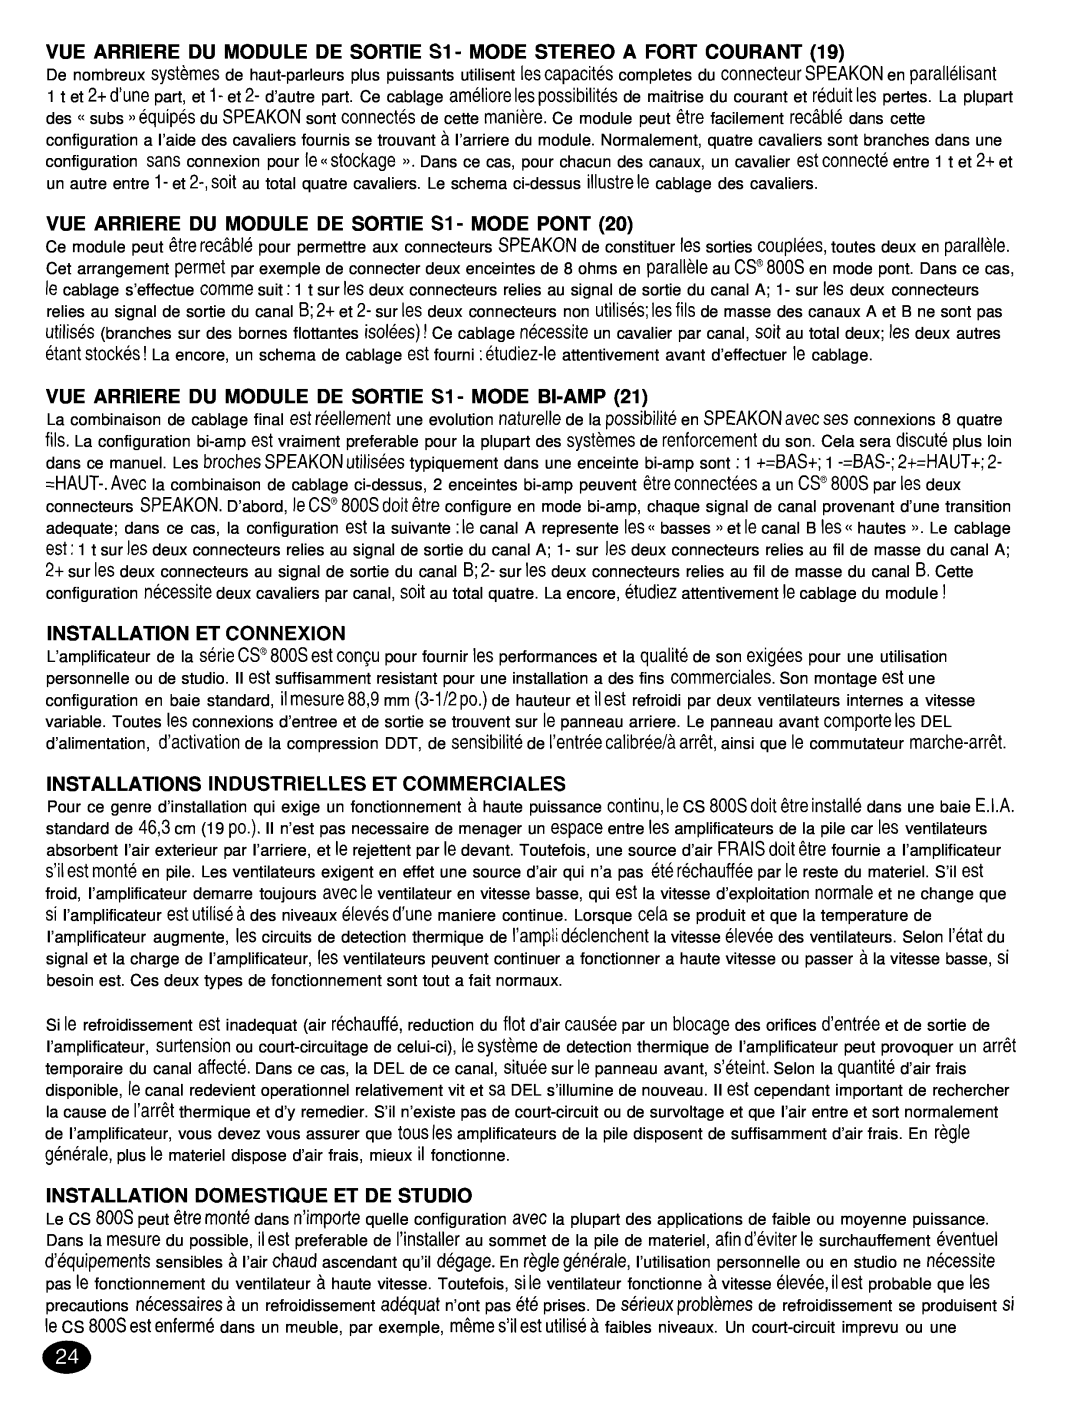 Peavey CS 8OOX manual VUE ARRIERE DU MODULE DE SORTIE Sl -MODE PONT, Installation Et Connexion 